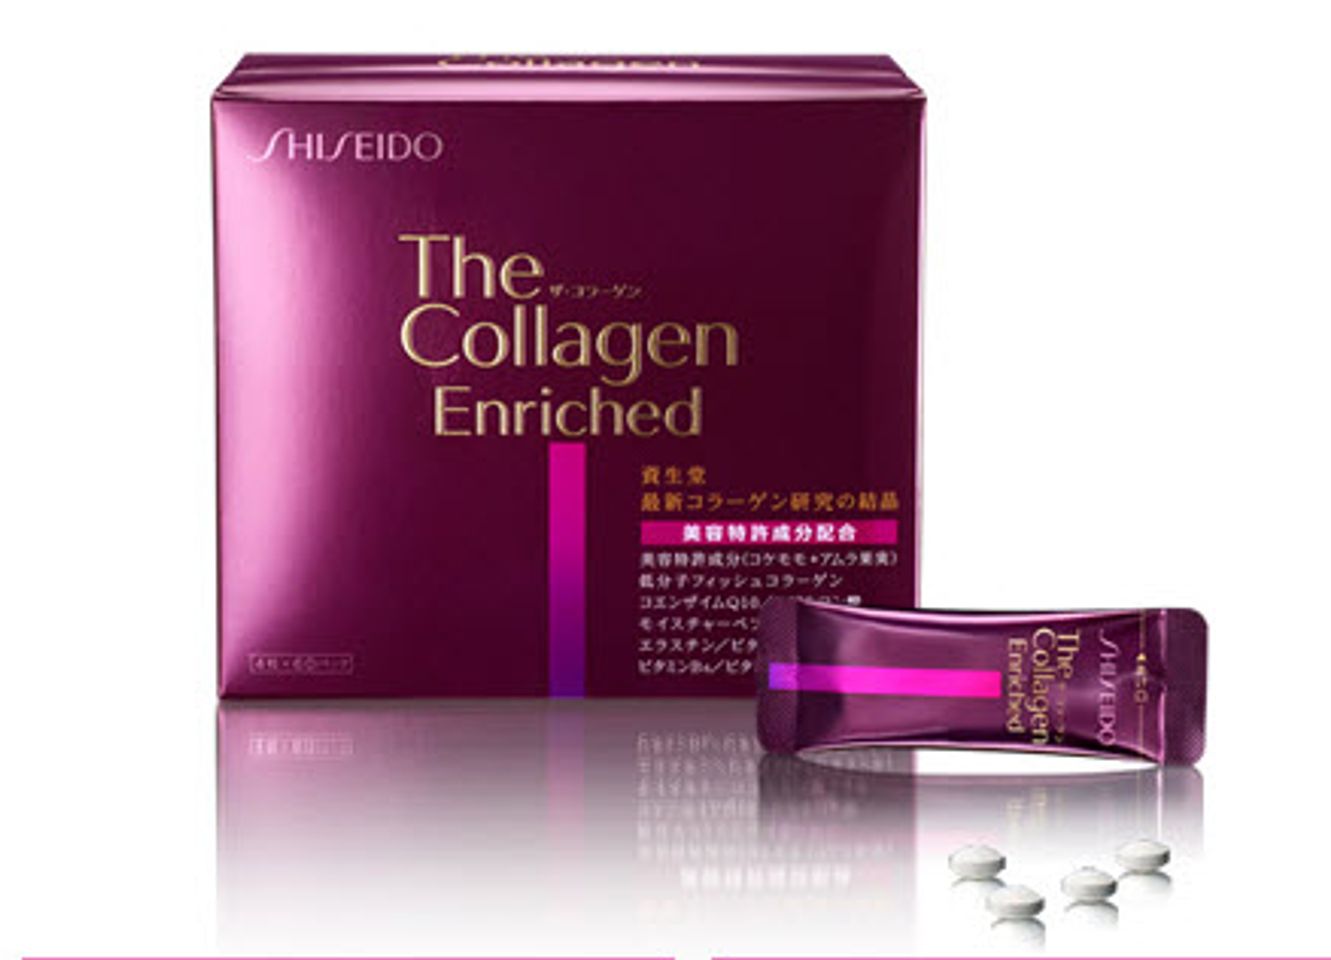 Viên uống Shiseido collagen enriched cung cấp lượng collagen cao nhất lên đến 1000 mg, cần thiết cho quá trình tái tạo và nuôi dưỡng da